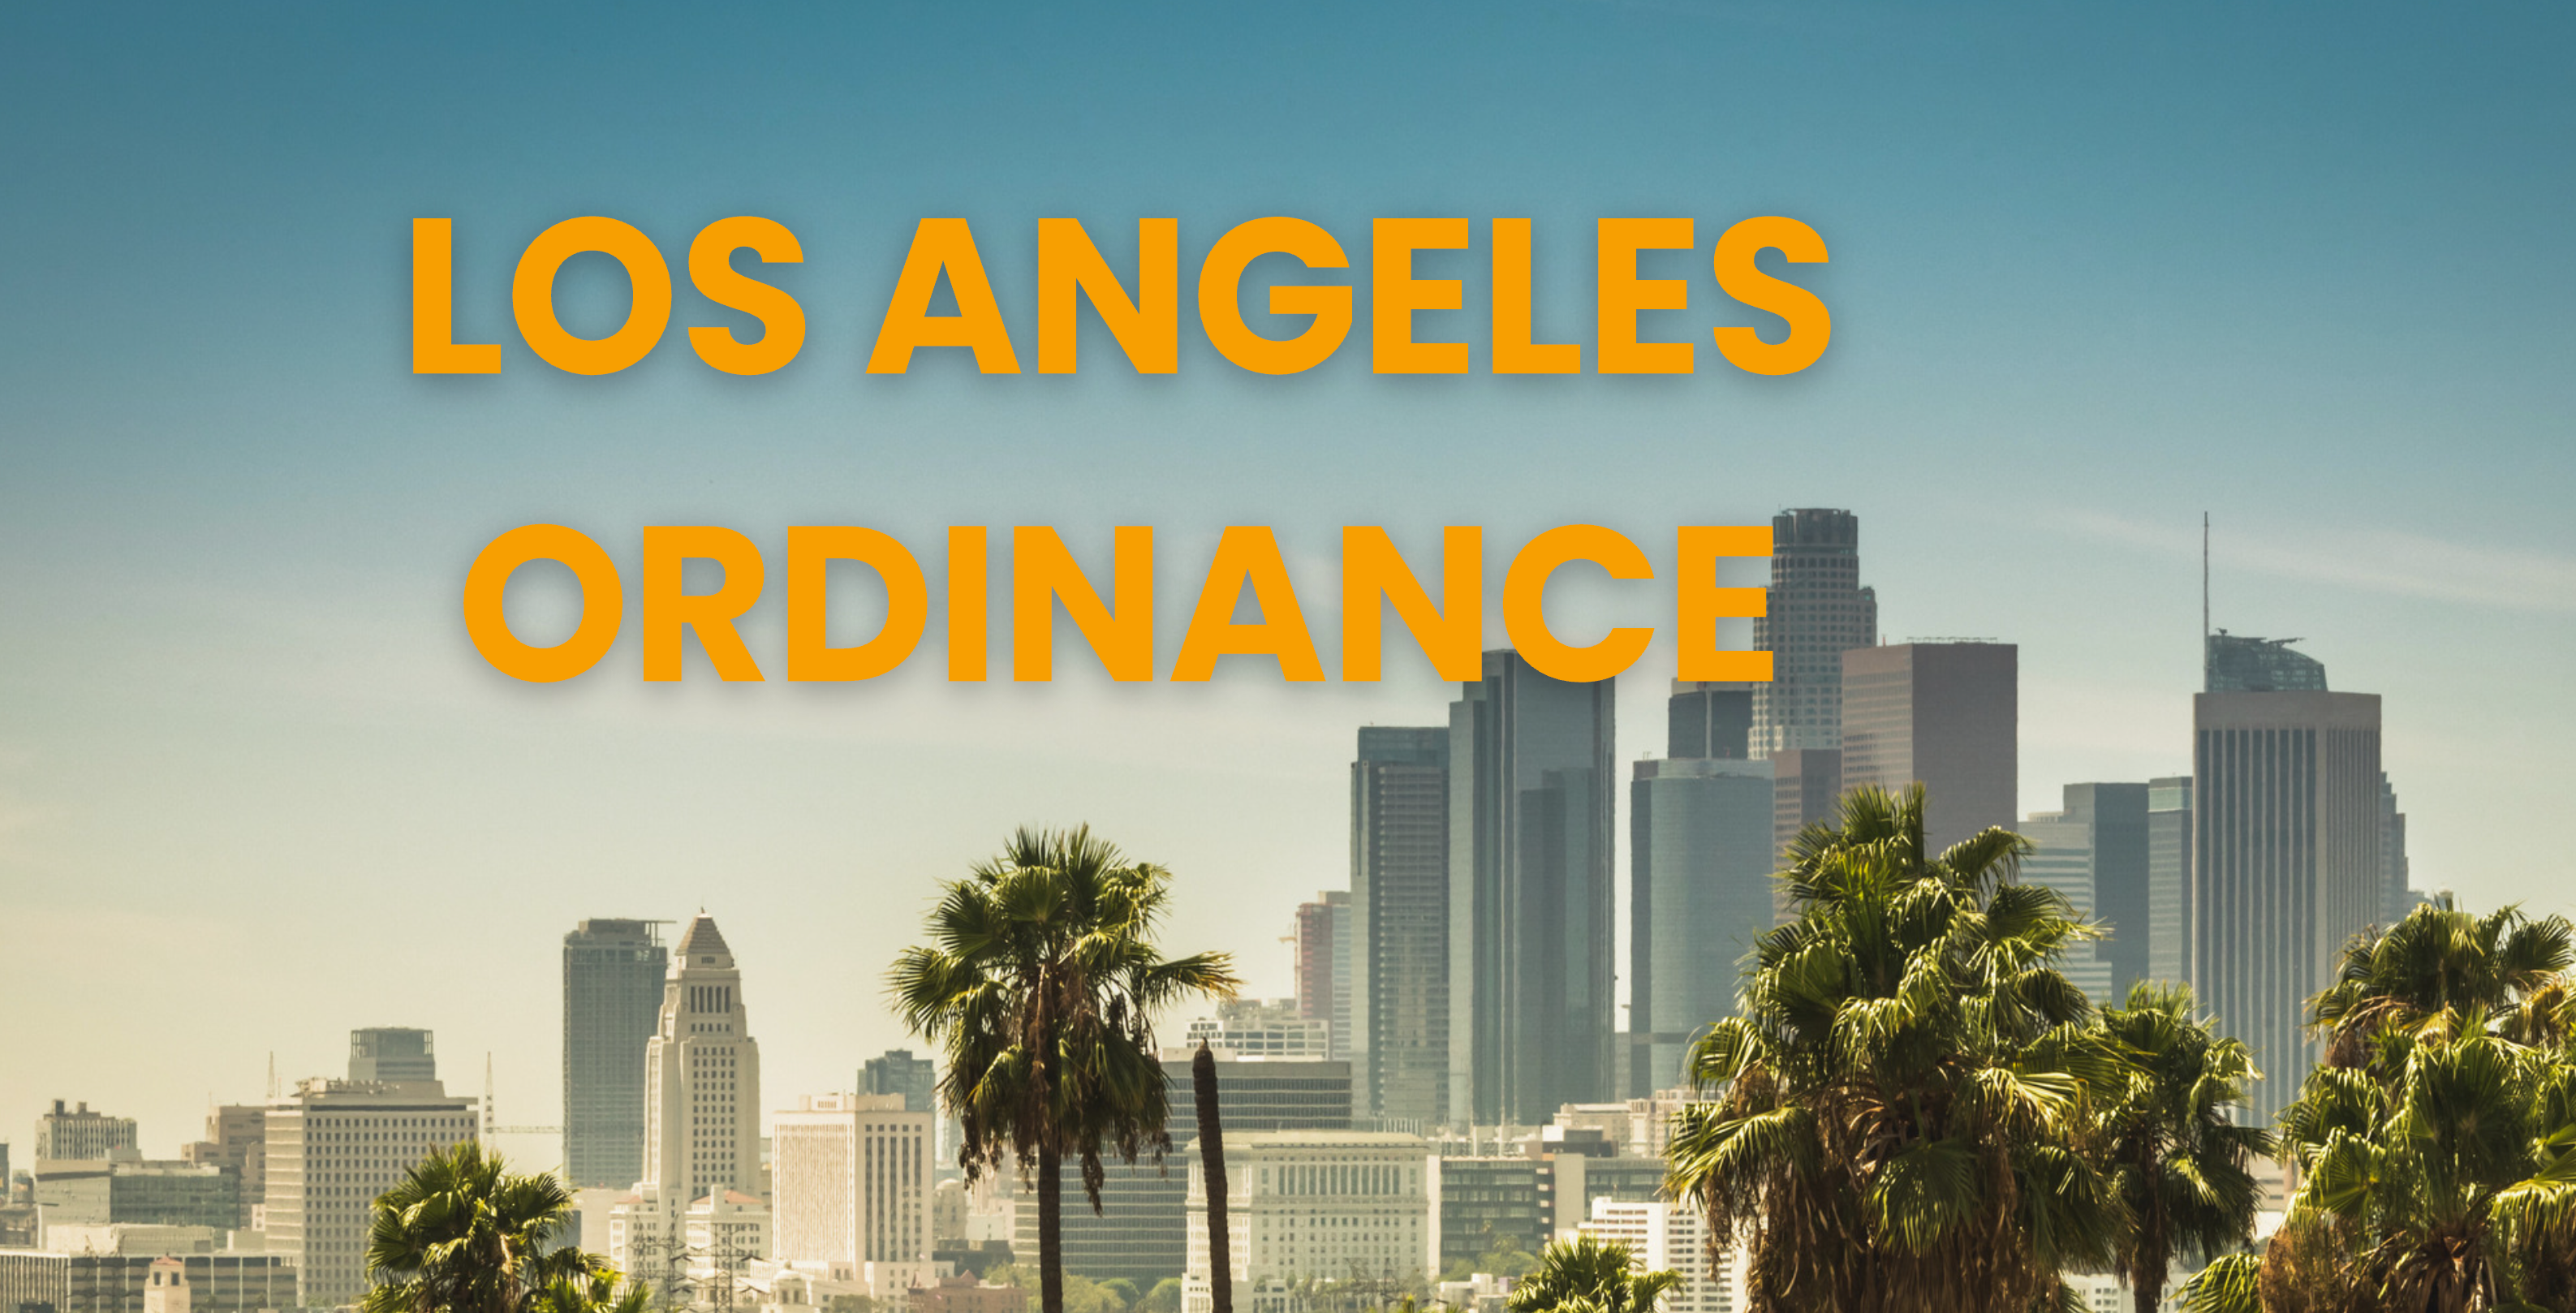 The ADU Los Angeles Ordinance